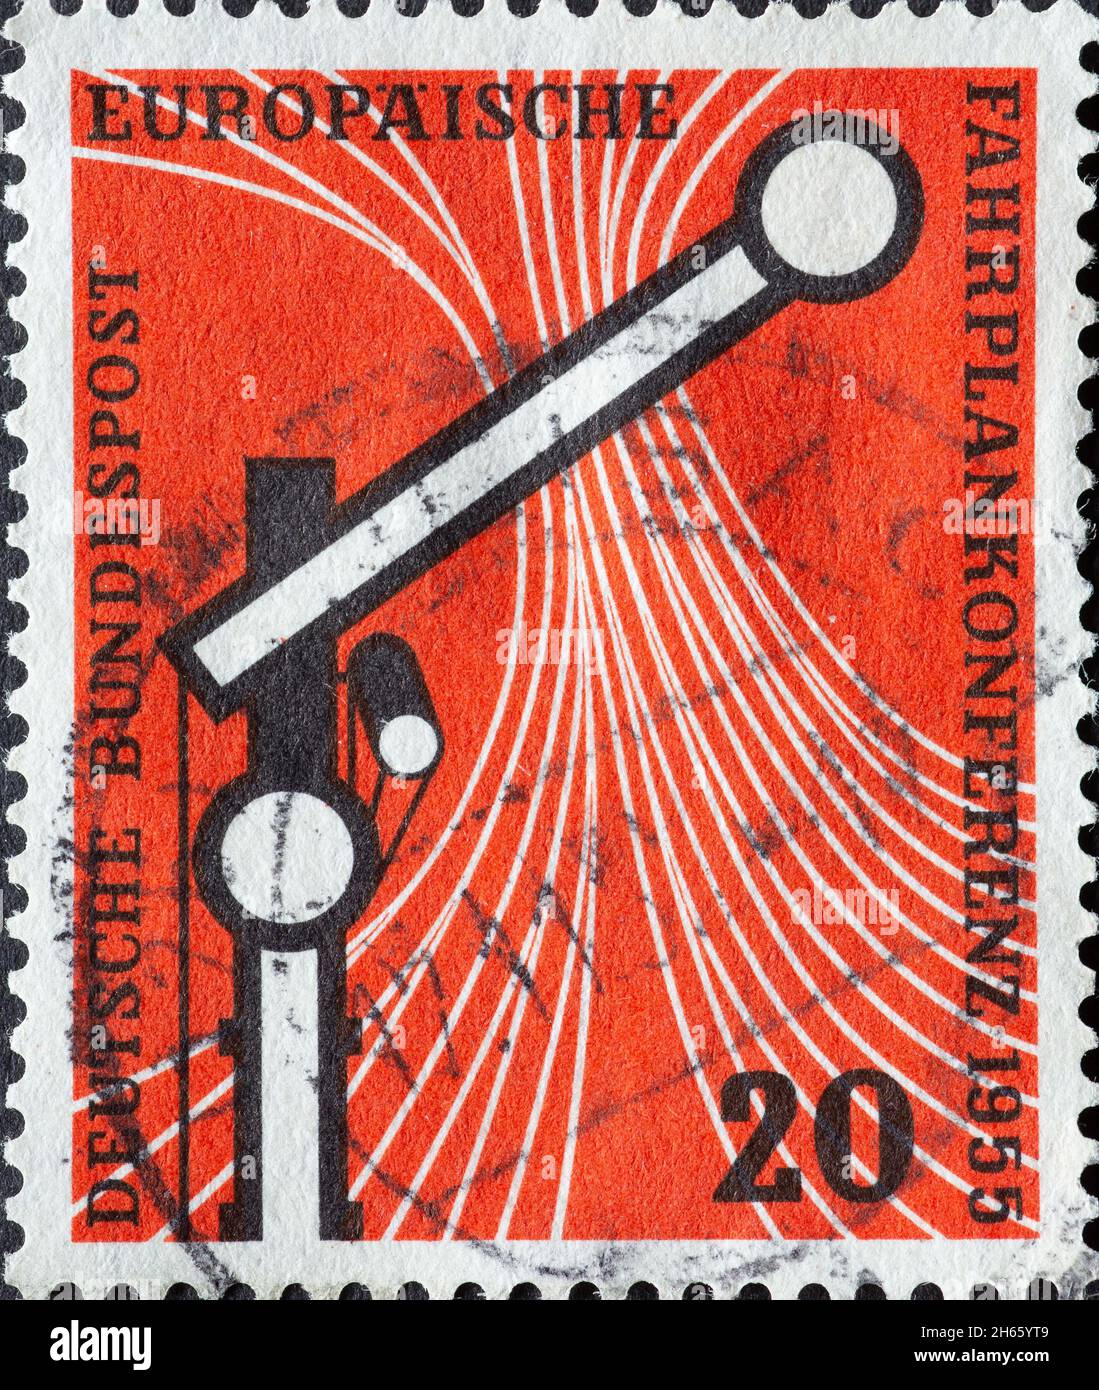 ALLEMAGNE - VERS 1955:ce timbre-poste montre un signal ferroviaire sur fond rouge.La raison de ce timbre-poste était le Timet européen de 1955 Banque D'Images